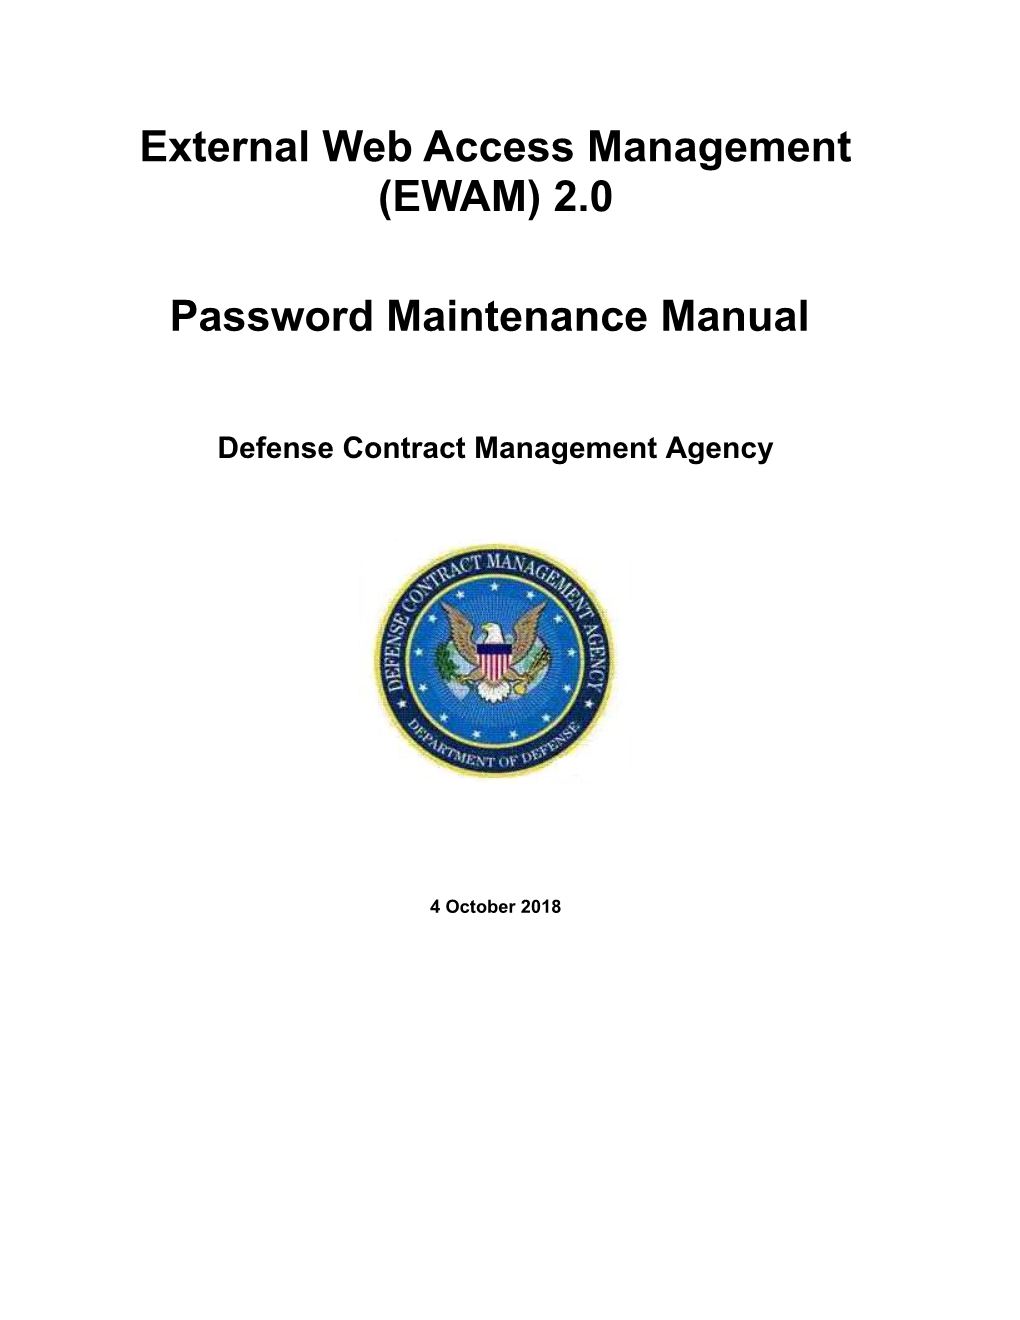 External Web Access Management (EWAM) 2.0